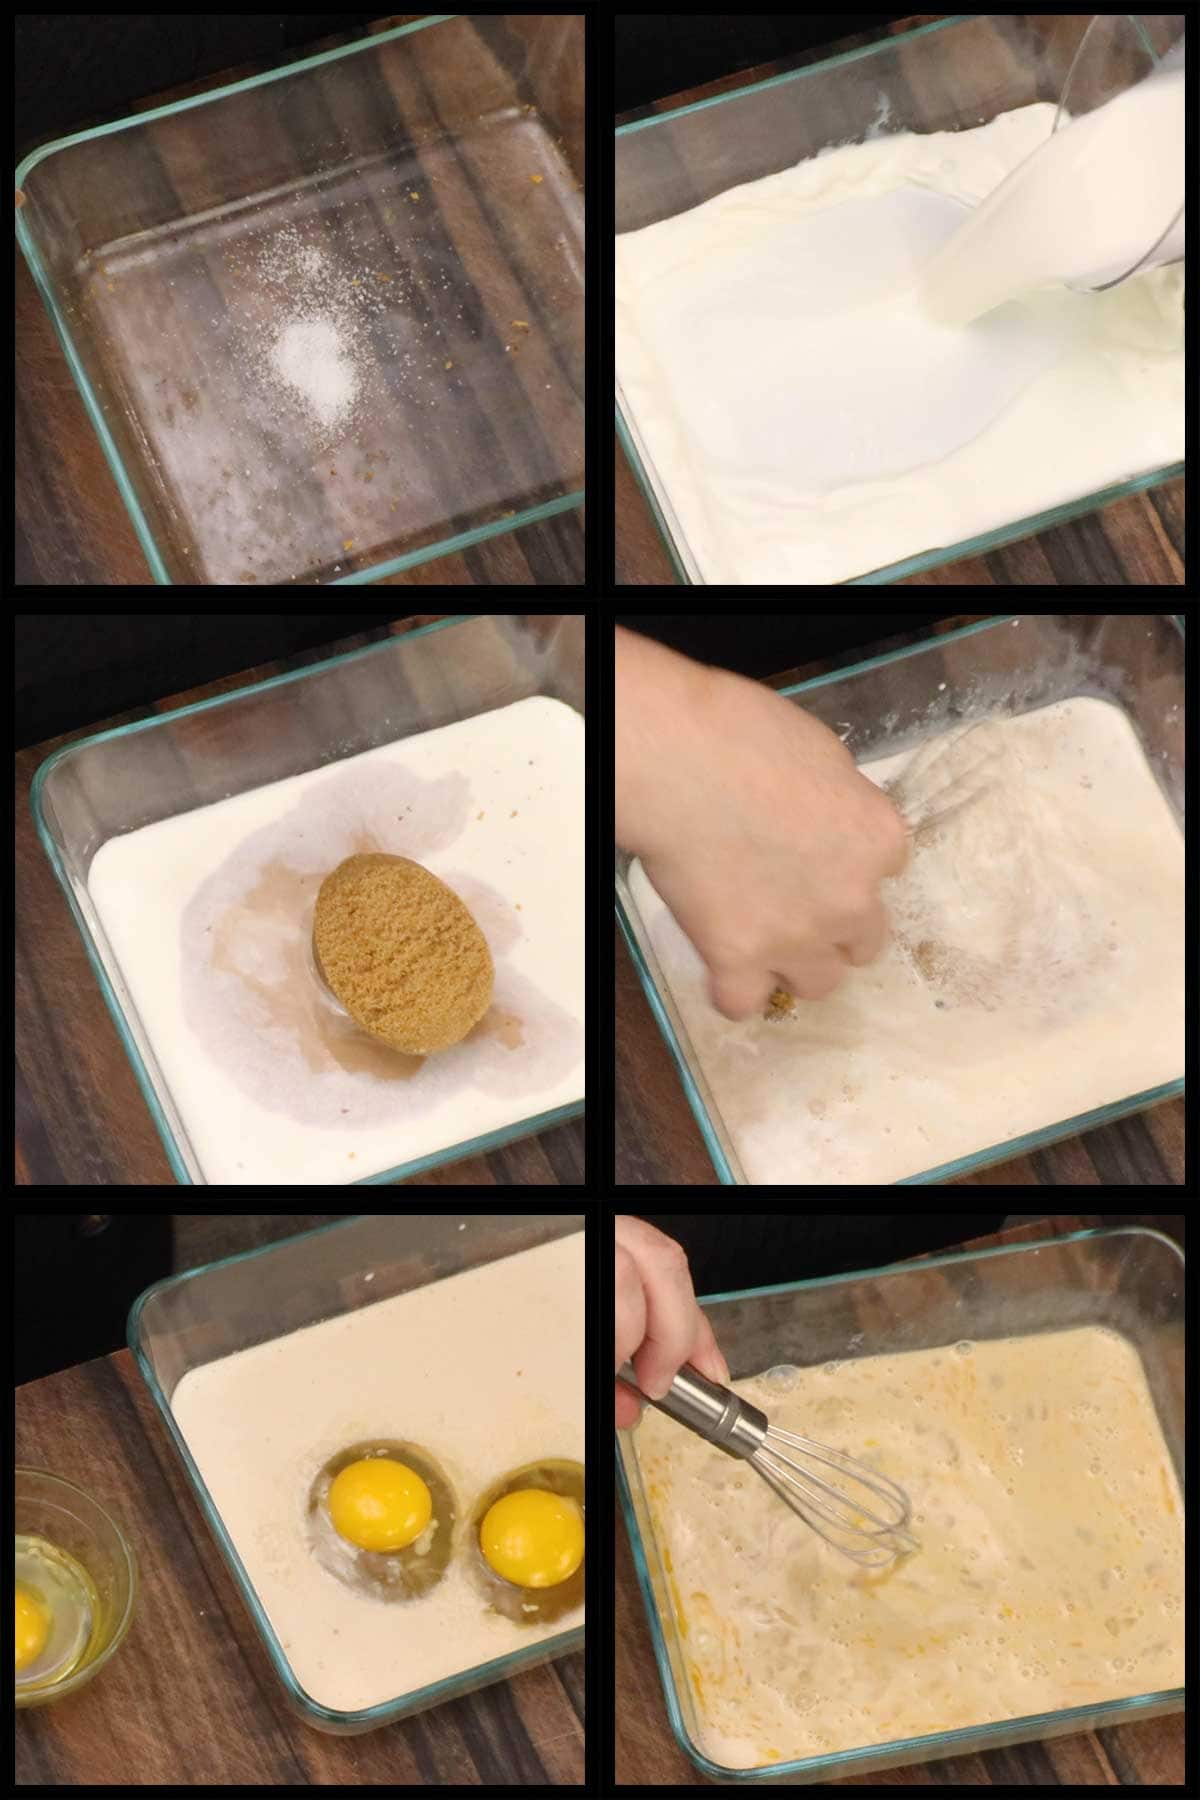 mixing up the custard.